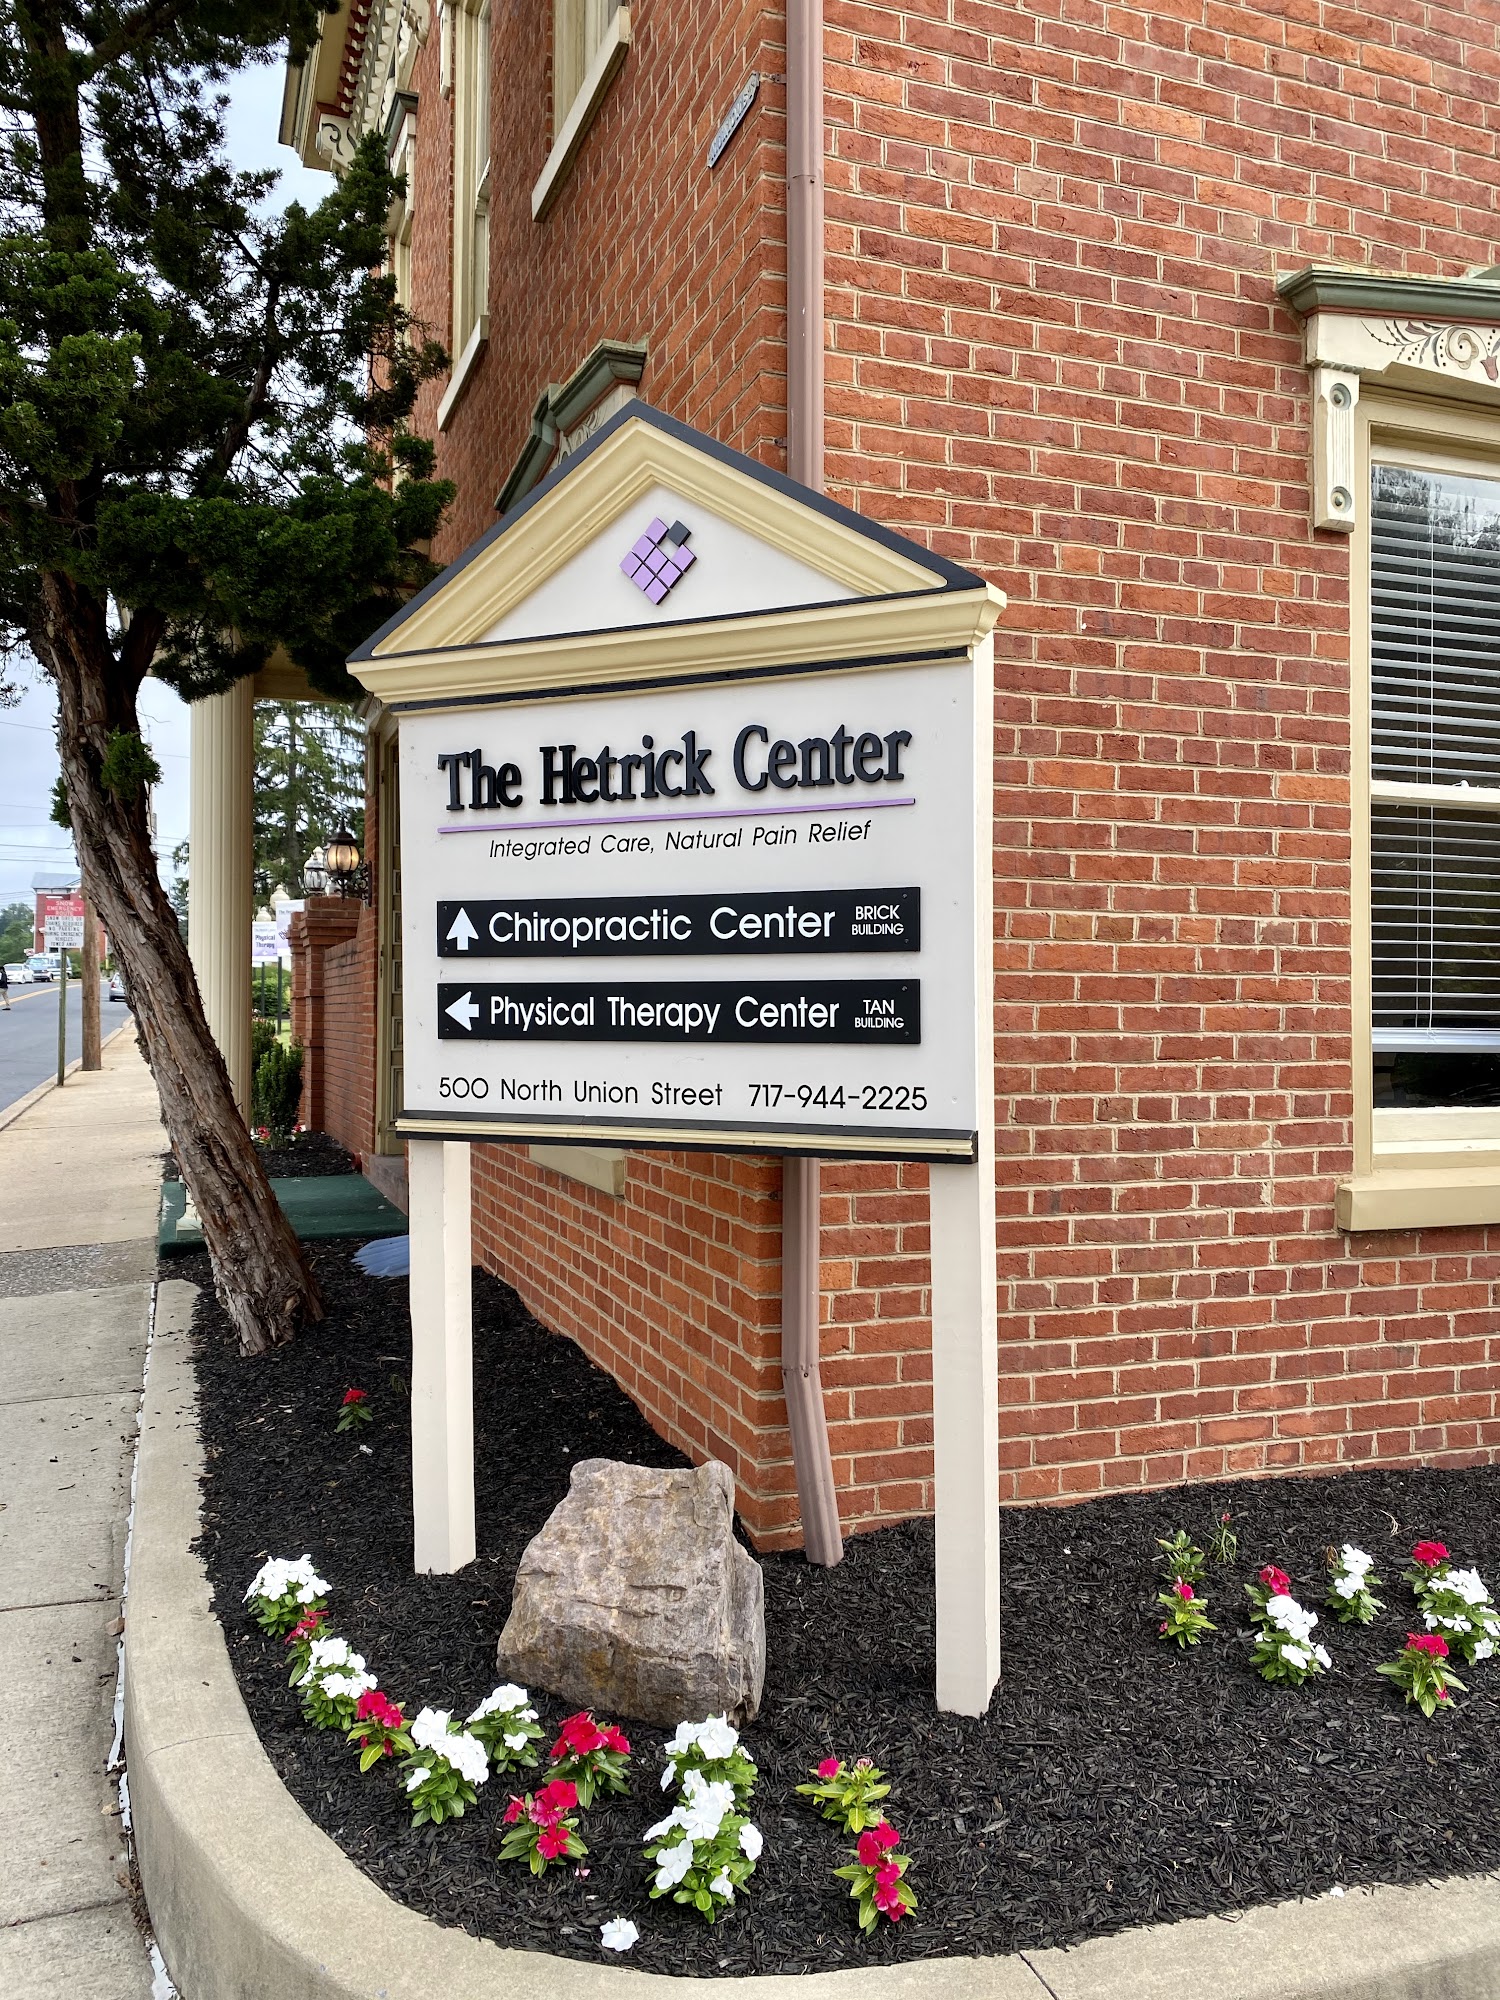 The Hetrick Center